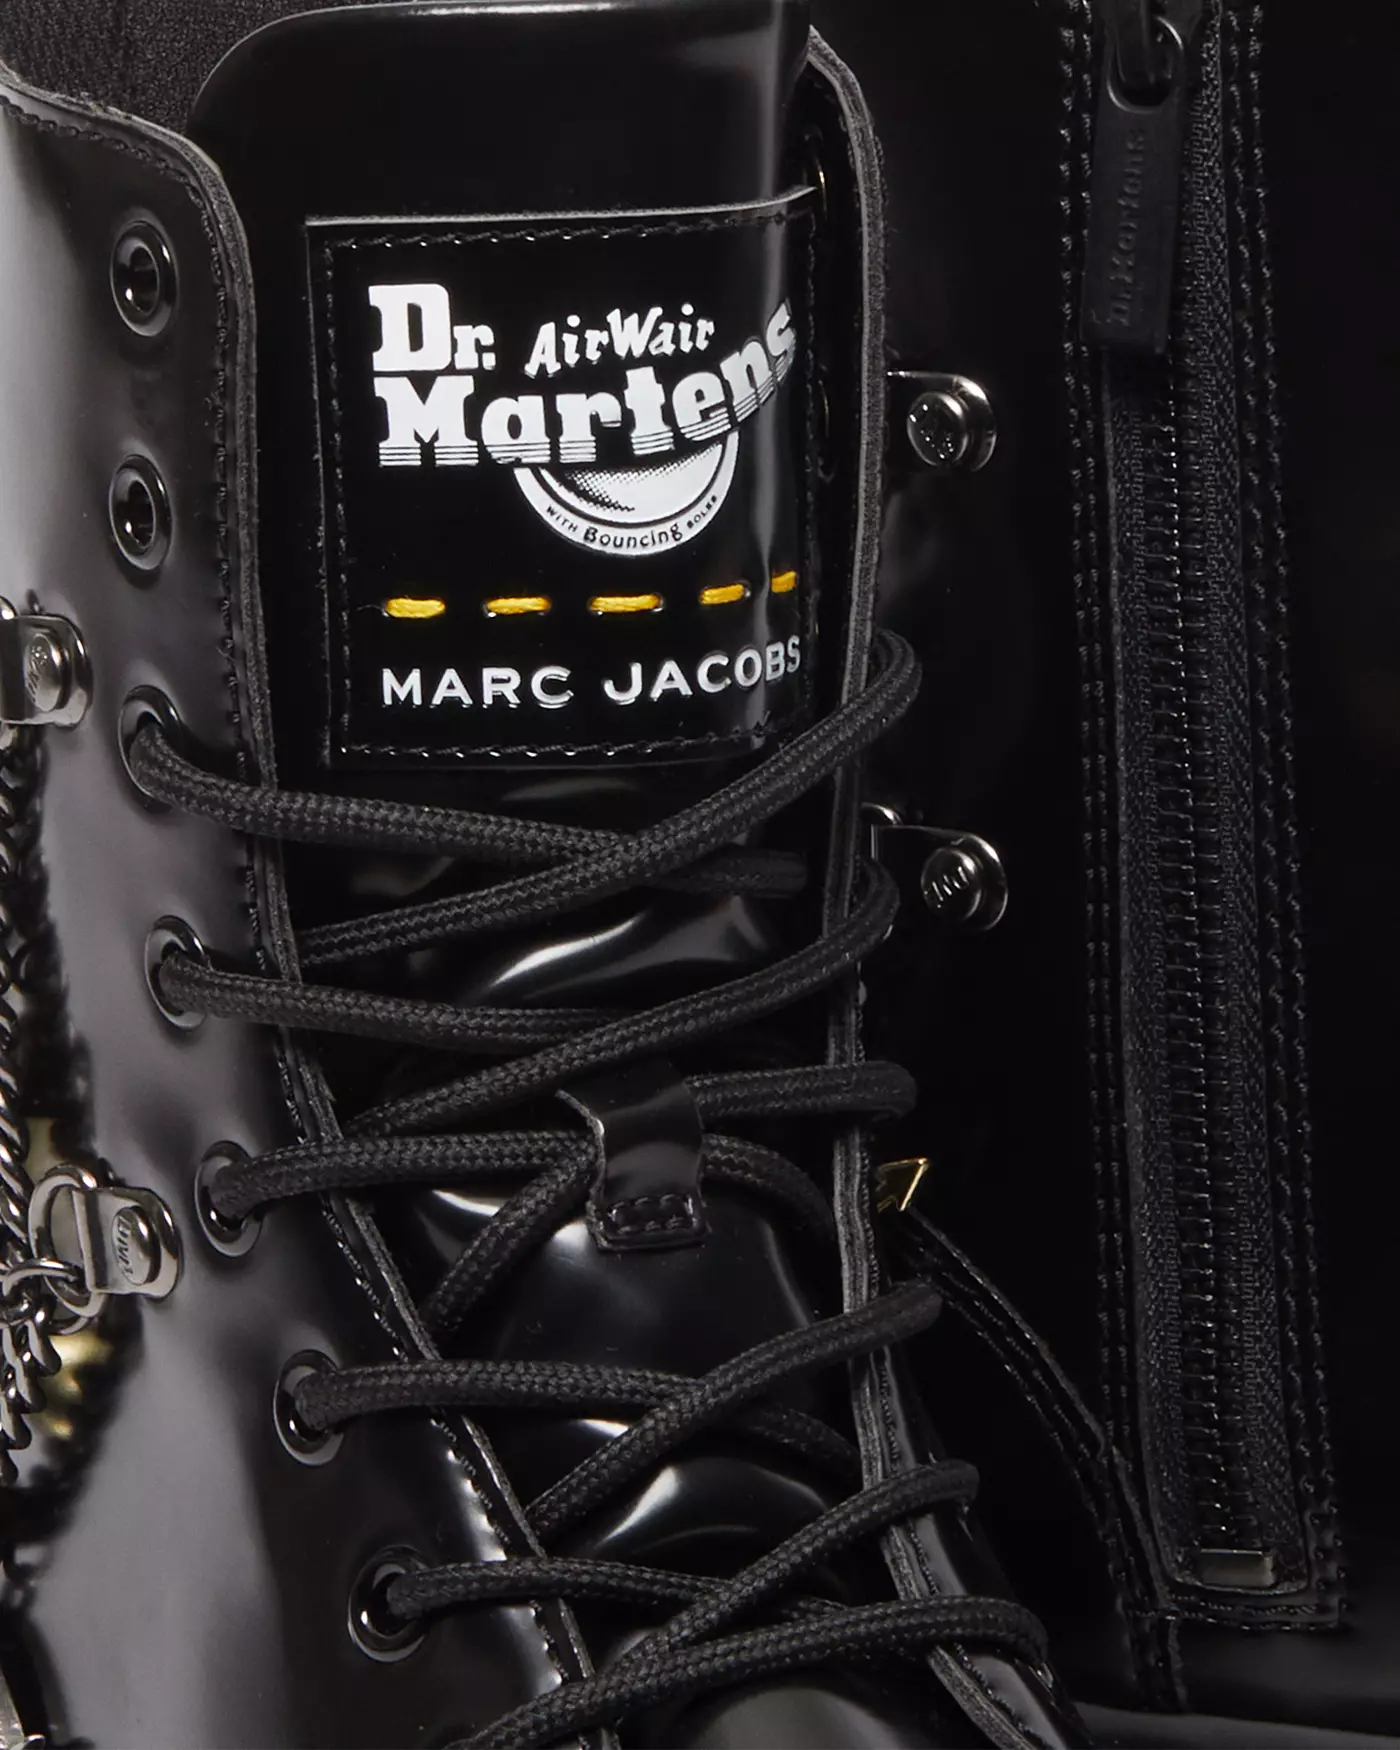 Marc Jacobs et Dr. Martens rallument leur flamme créative